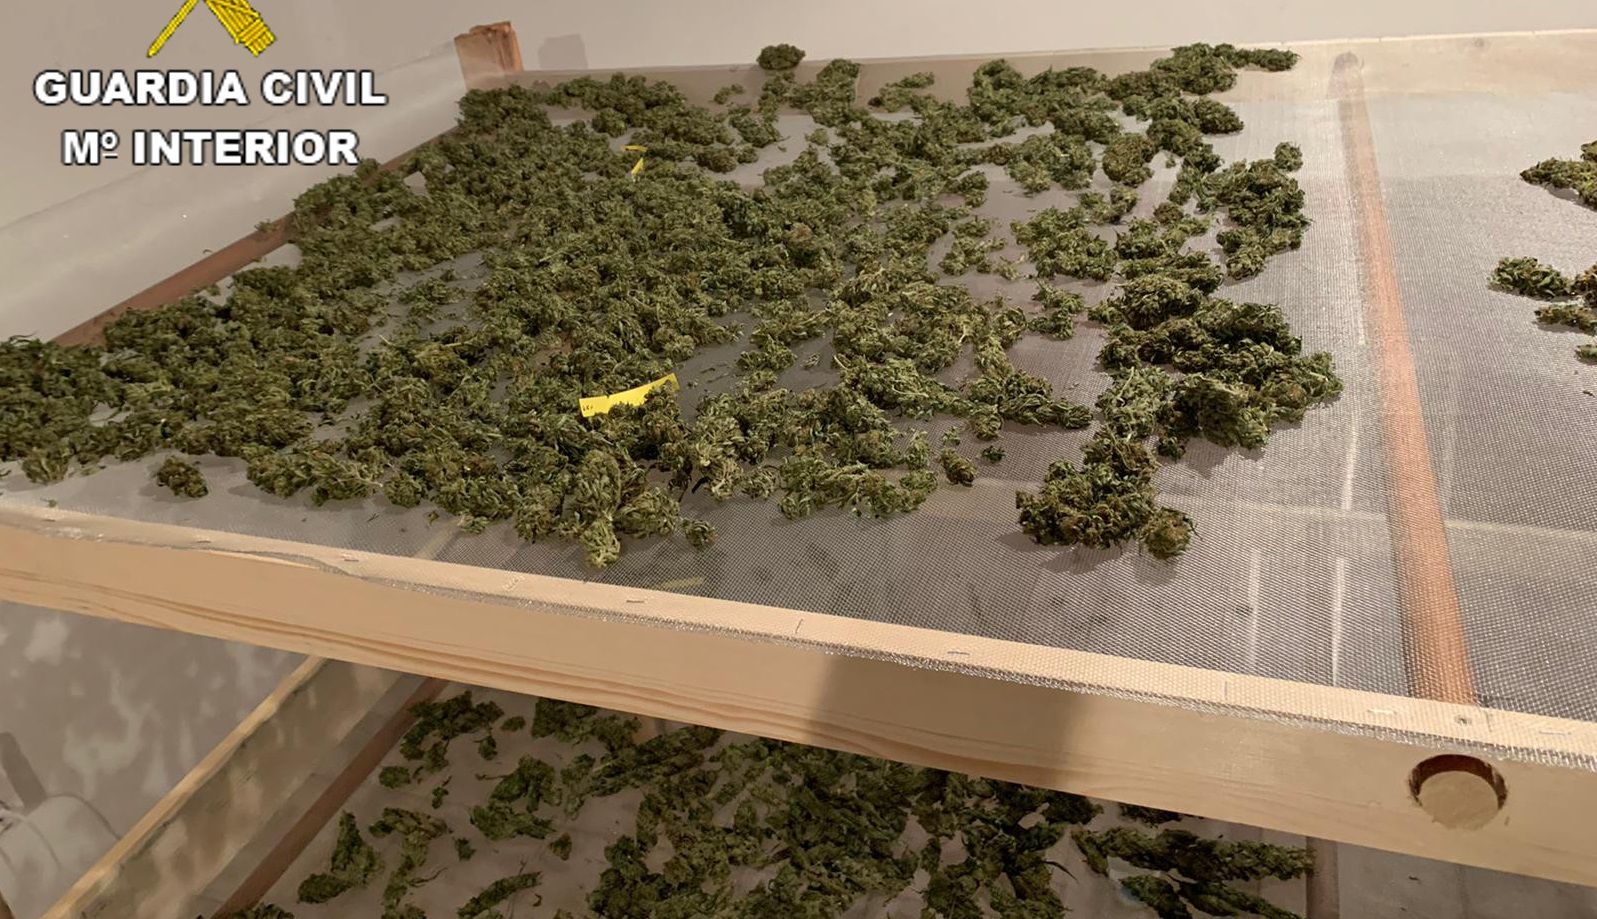 Plantación de marihuana localizada por la Guardia Civil en una vivienda de Yaiza